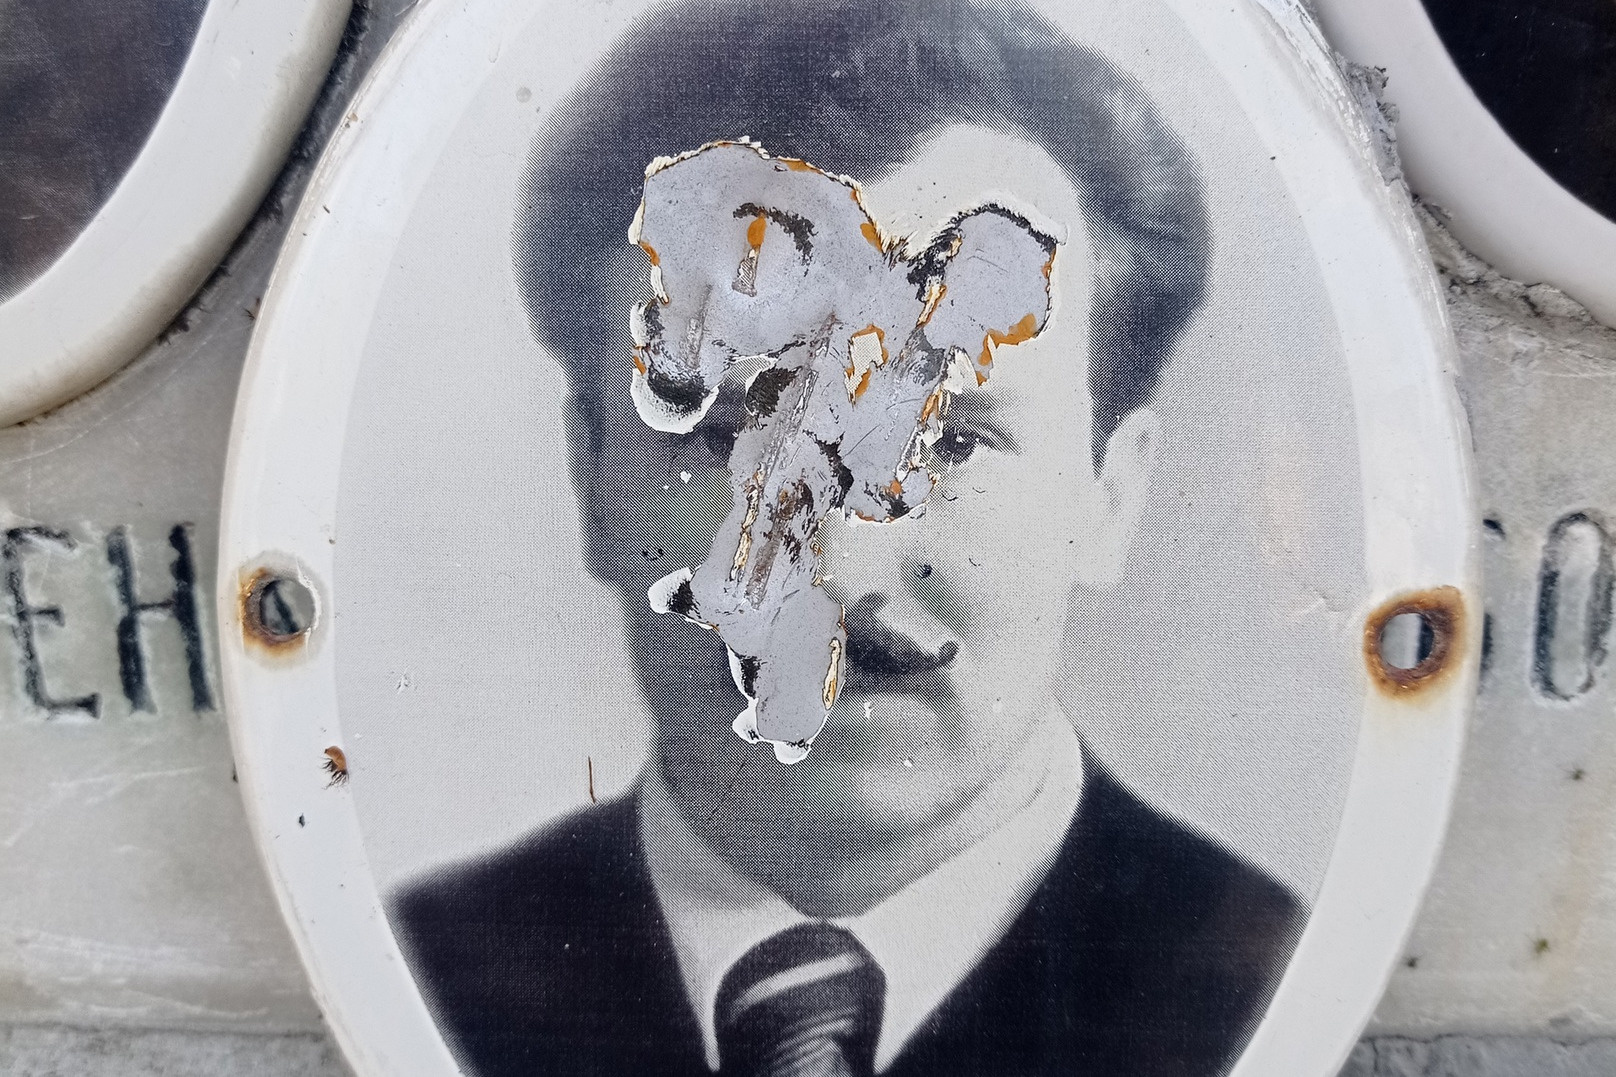 В Екатеринбурге осквернили могилу дятловцев. На ней нарисовали нацистскую свастику и странные слова